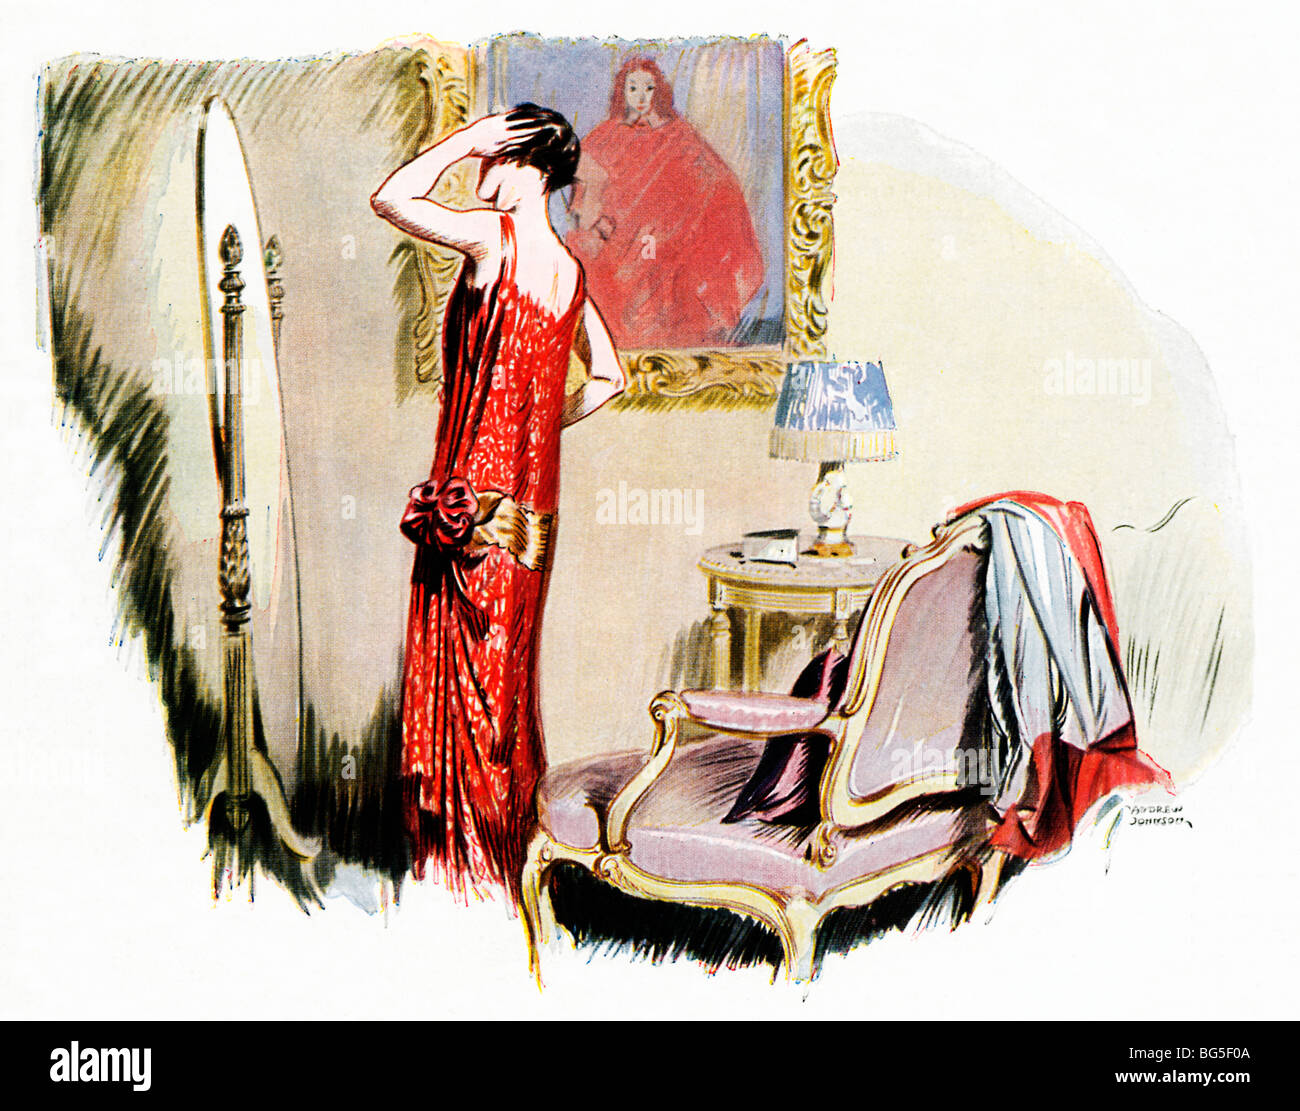 Jeune fille dans une robe vaporeuse, 1925 L'illustration de mode d'une dame dans son boudoir au lissage se prépare à affronter le monde Banque D'Images